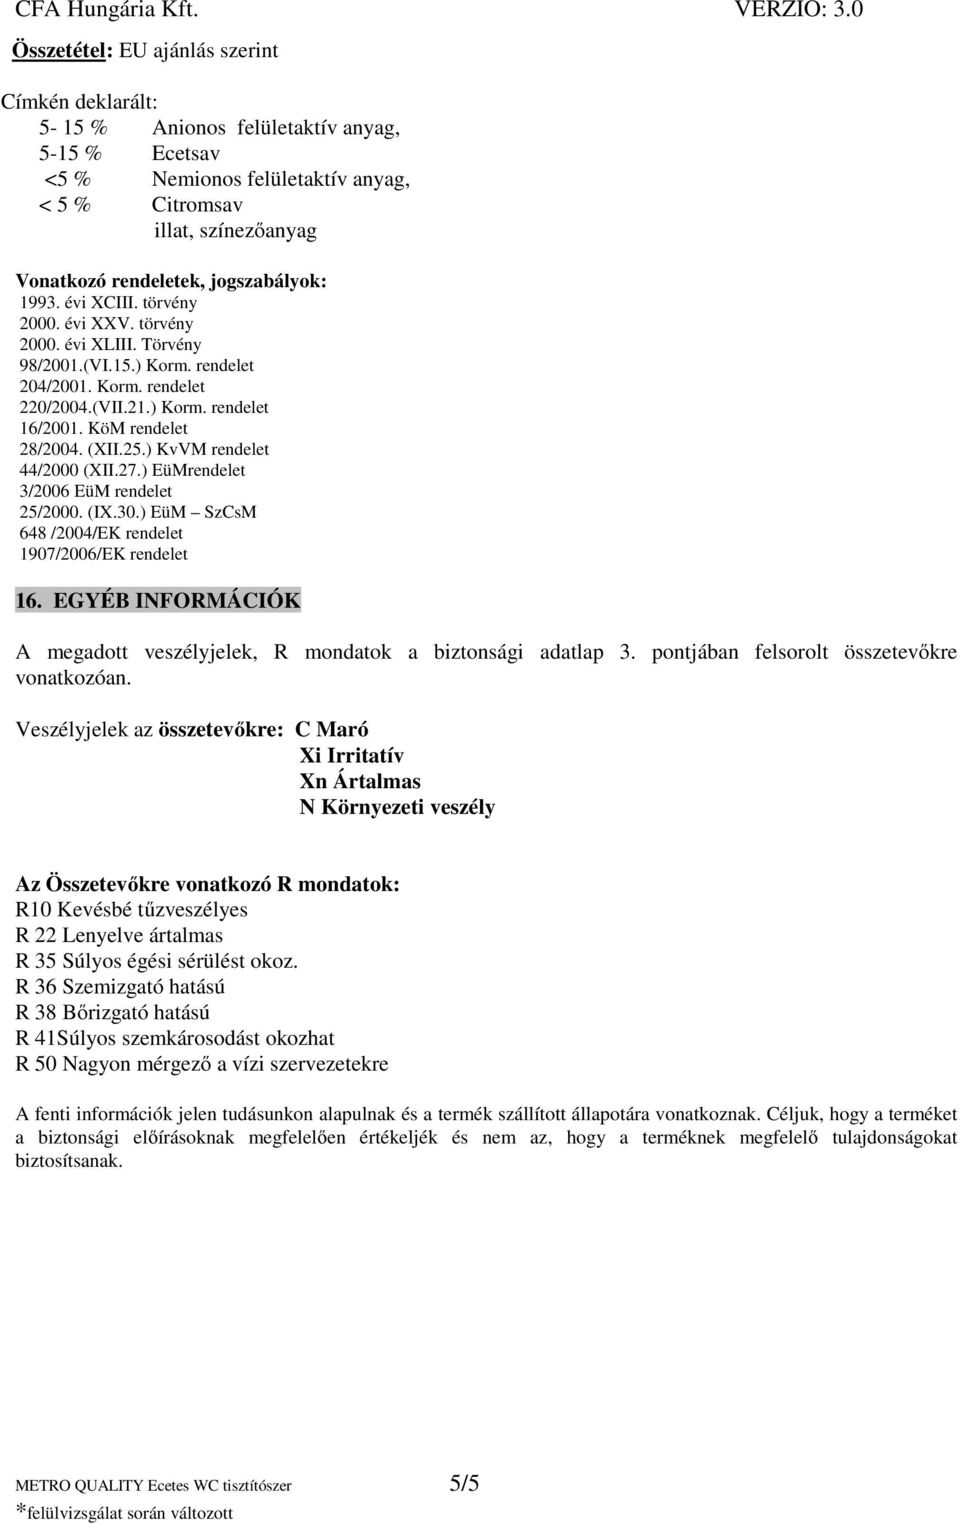 CFA Hungária Kft. VERZIO: 3.0 BIZTONSÁGI ADATLAP - PDF Ingyenes letöltés